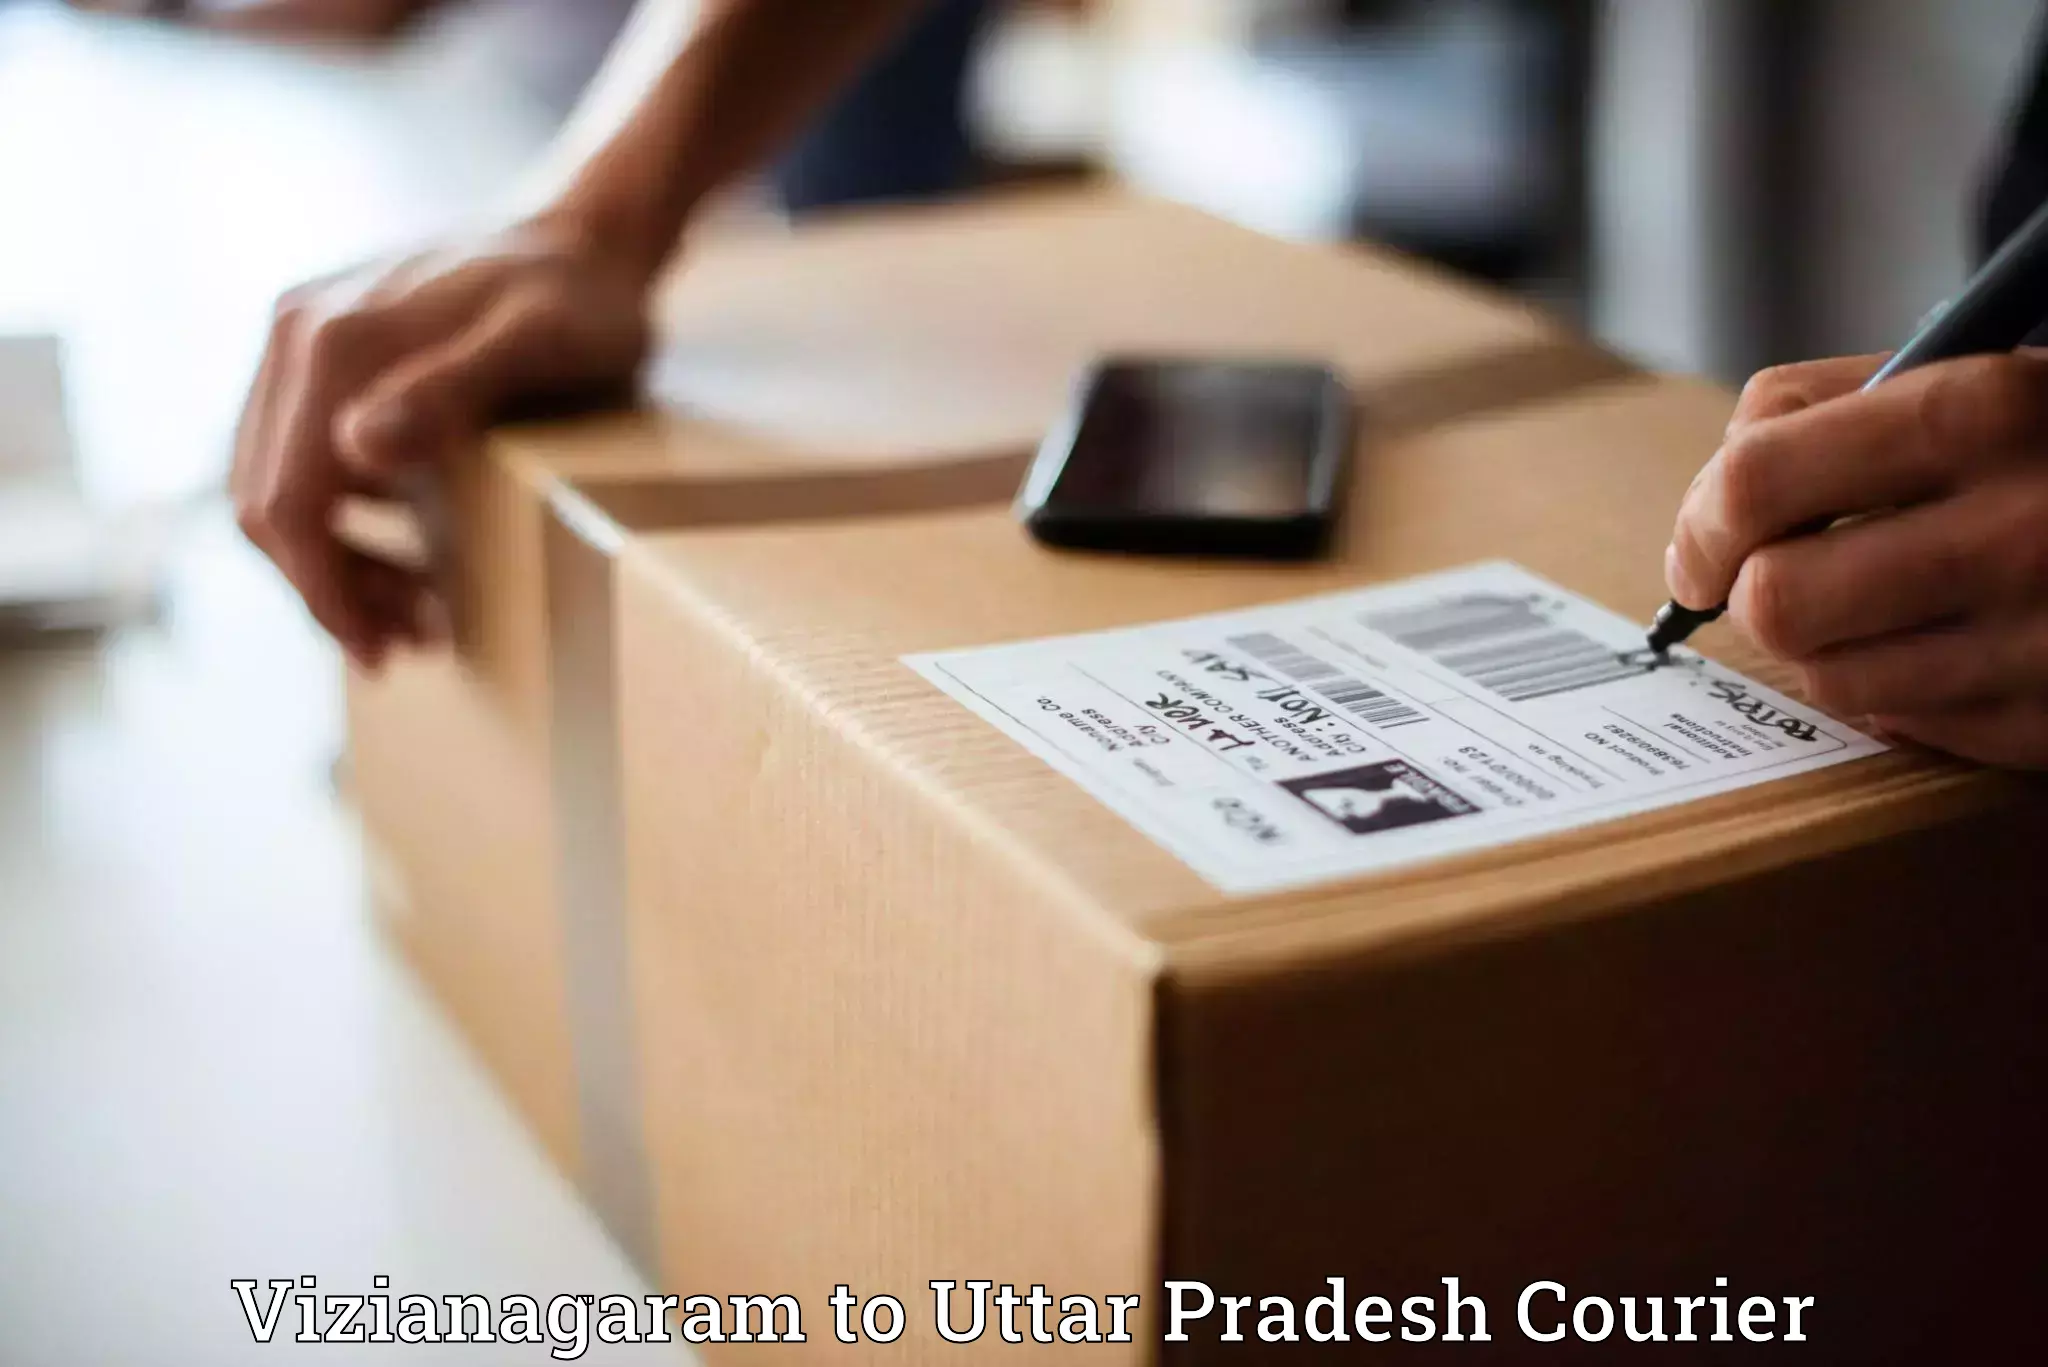 Efficient parcel delivery Vizianagaram to Rasulabad